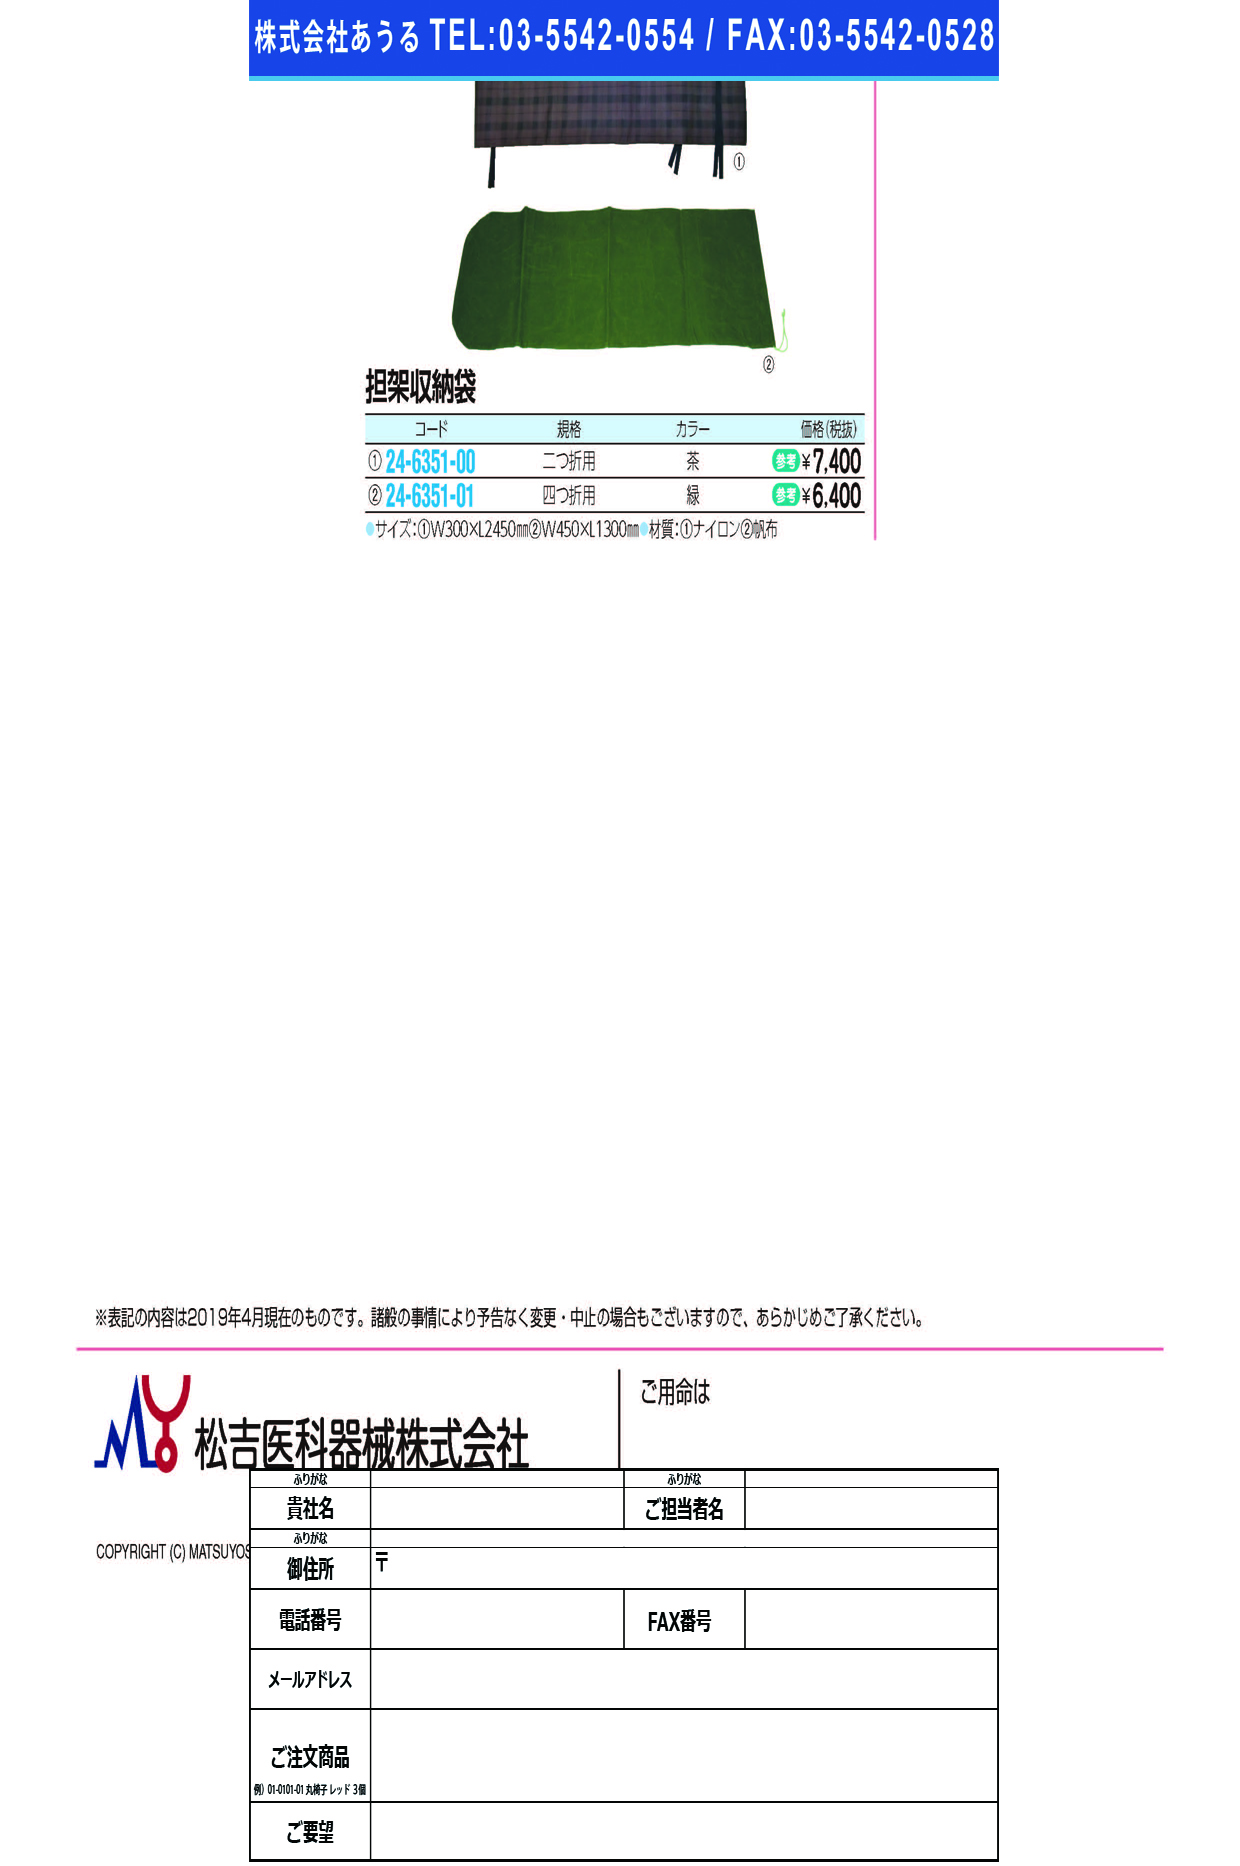 (24-6351-01)担架格納袋（緑・帆布） YS-51(4ﾂｵﾘﾖｳ) ﾀﾝｶｶｸﾉｳﾌｸﾛ【1個単位】【2019年カタログ商品】